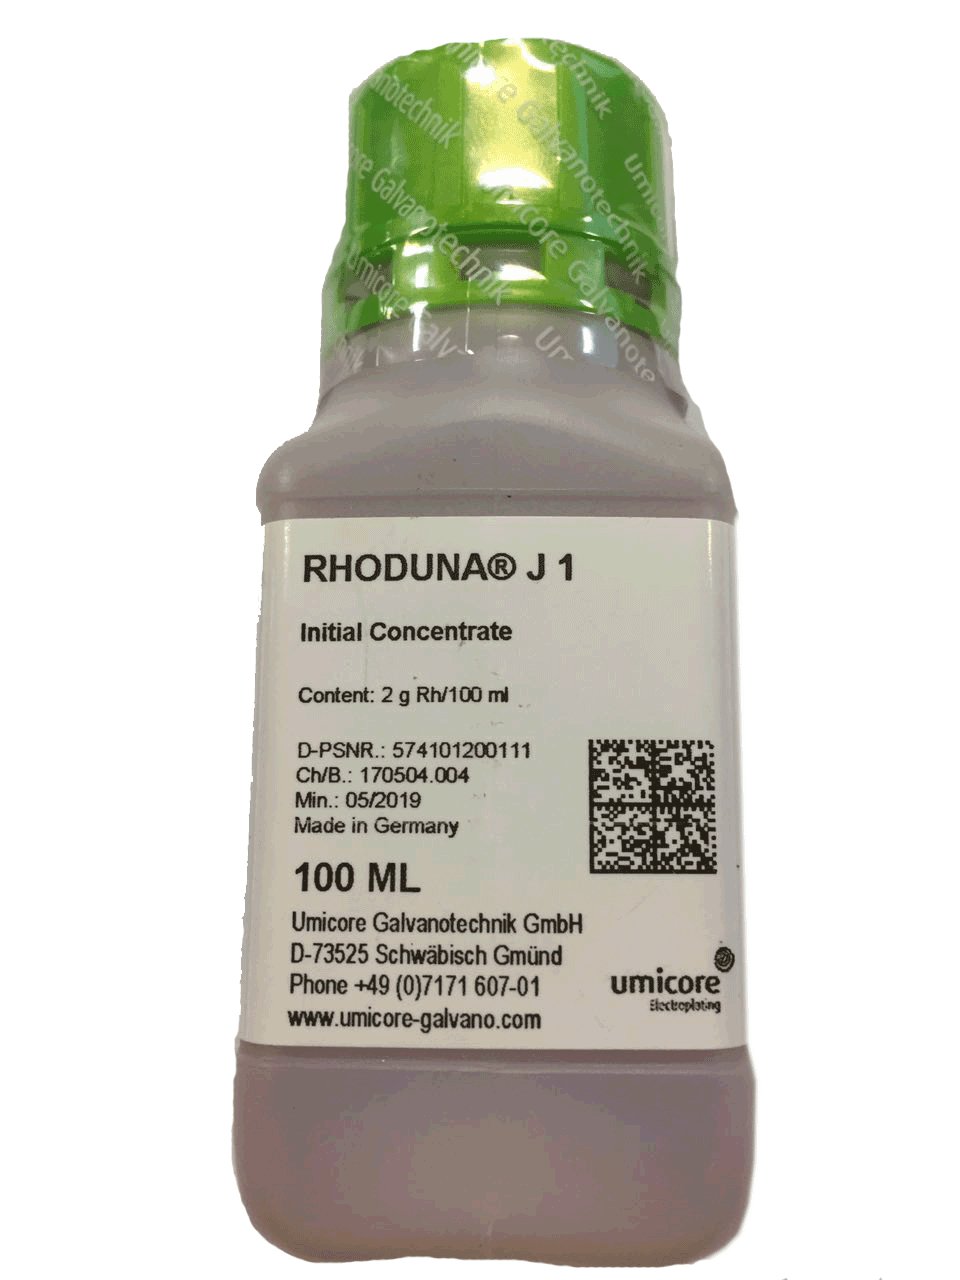 RHODUNA ® J1